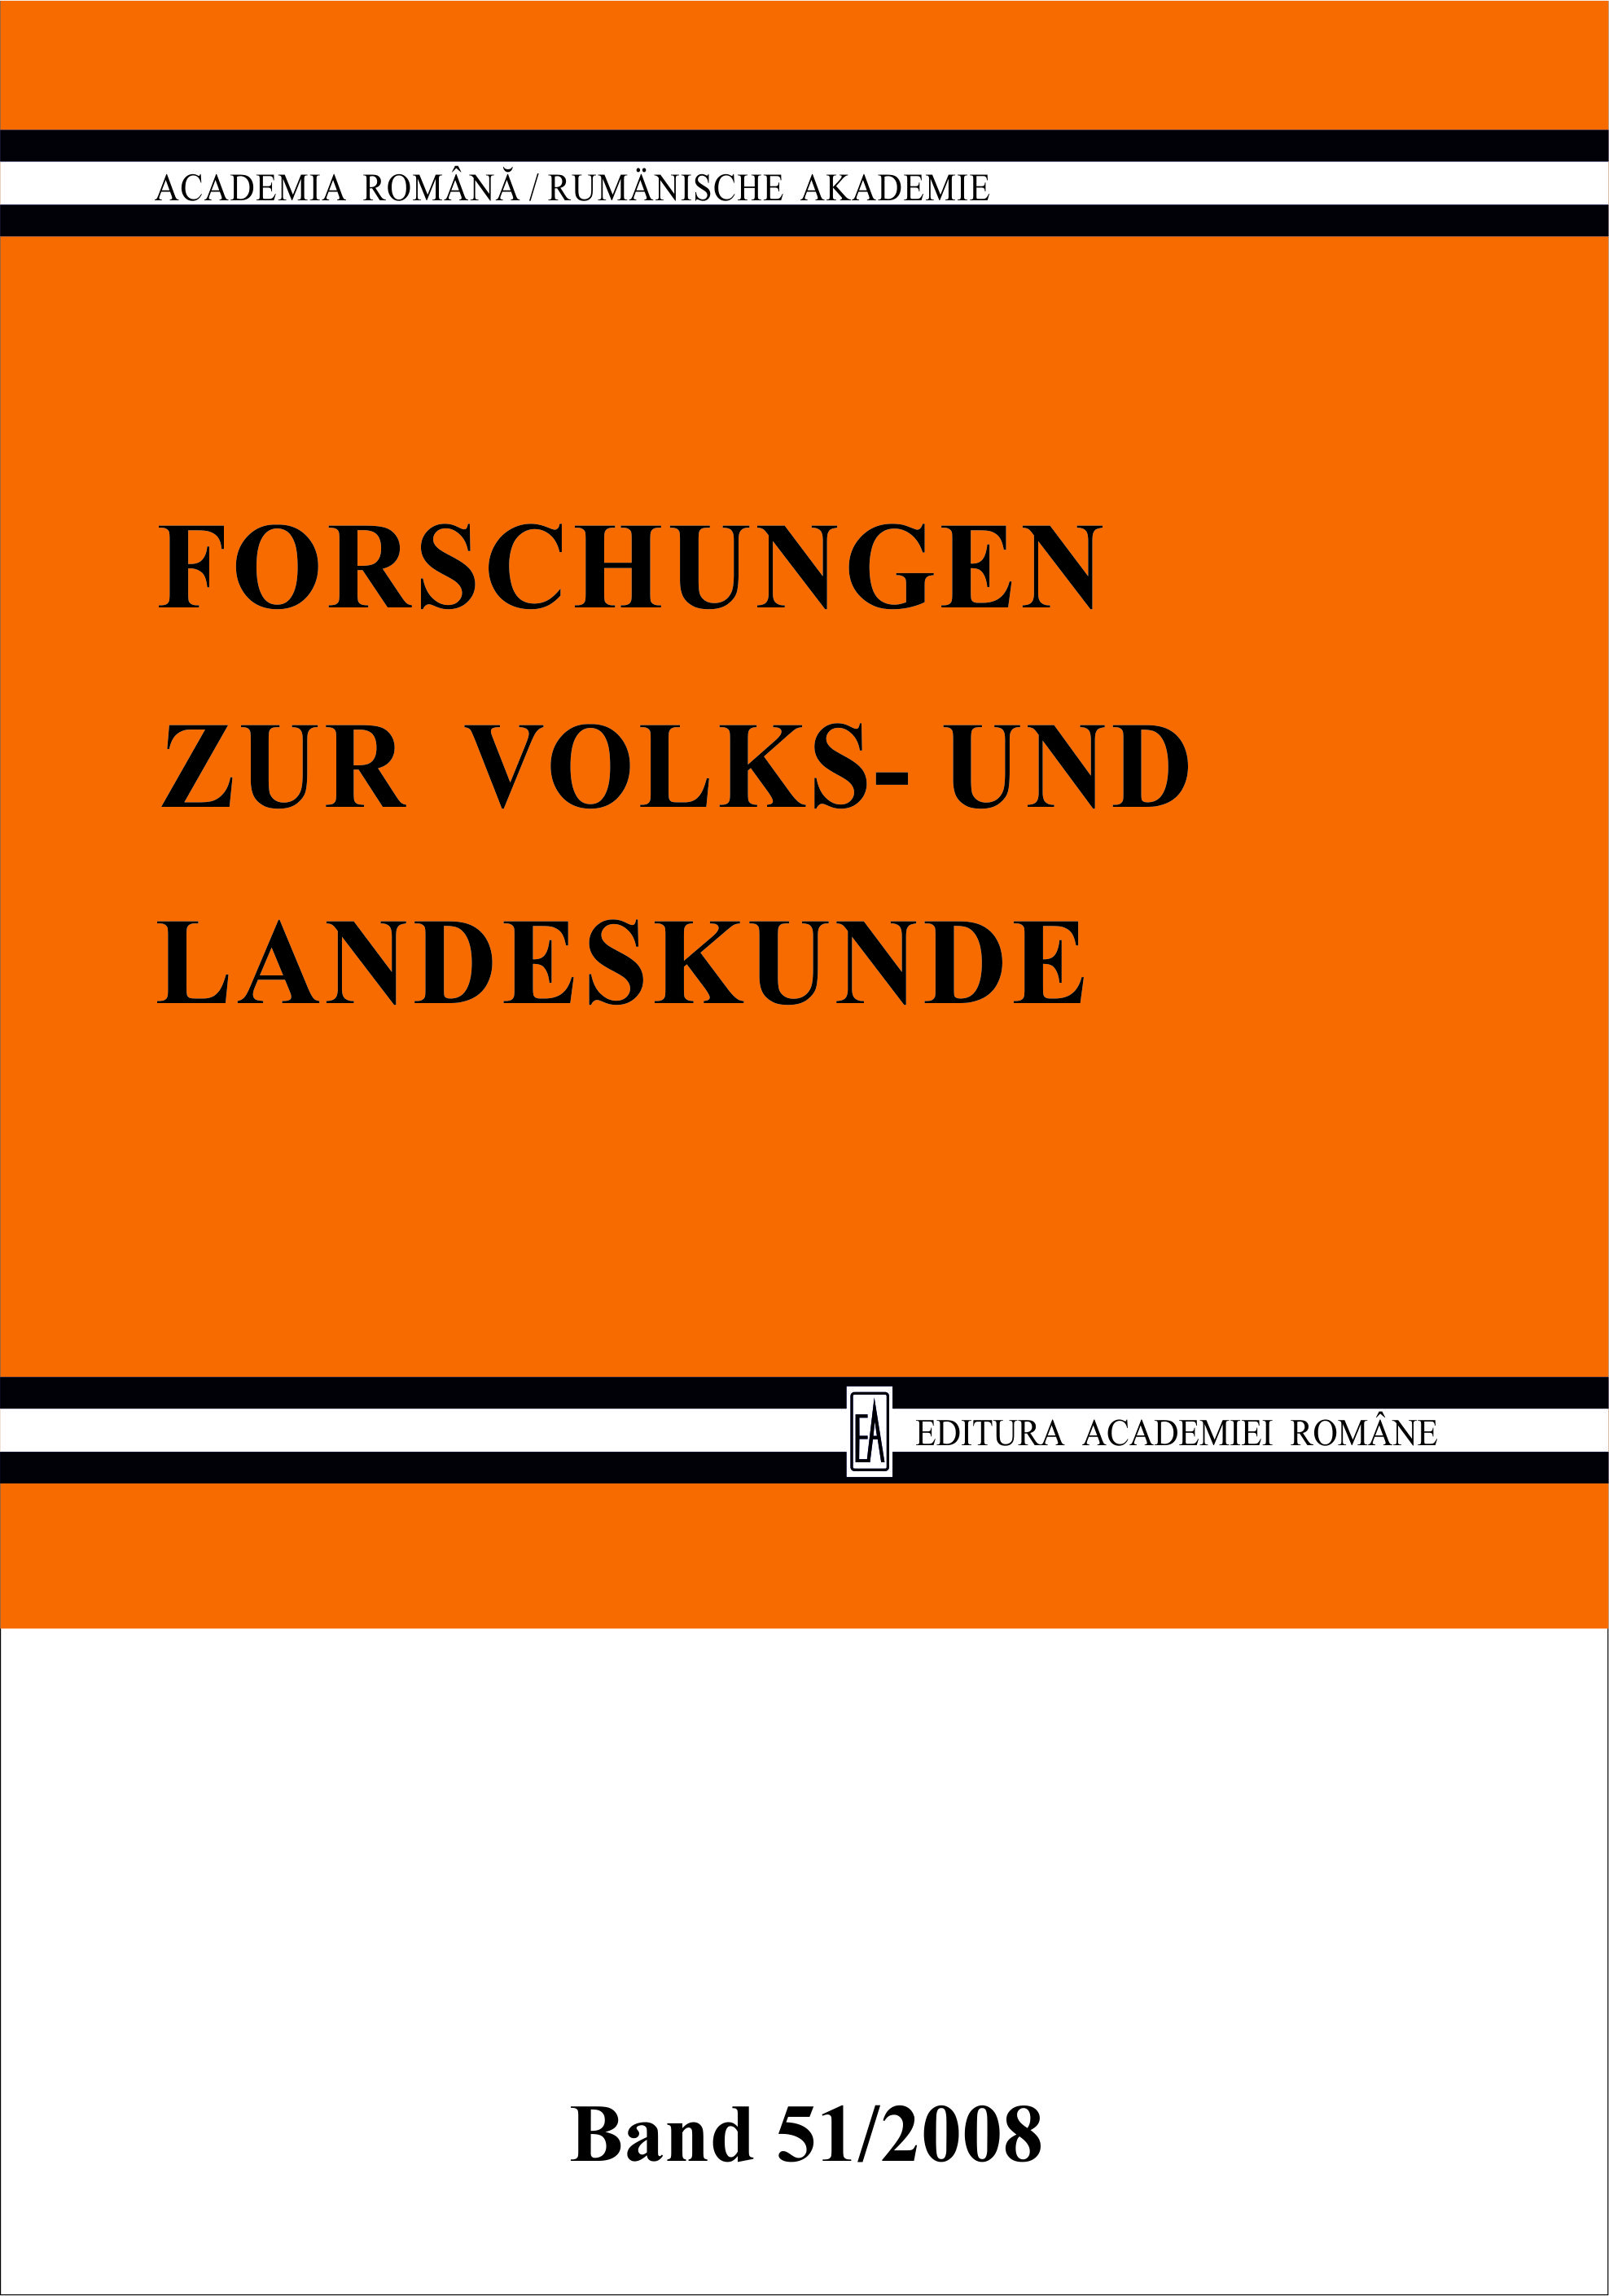 Book Presentation of: Bücherschau 
Valentin Mureşan, Barocul în pictura germană şi austriacă din secolele XVII–XVIII (Colecţia Muzeului Brukenthal), S Cover Image